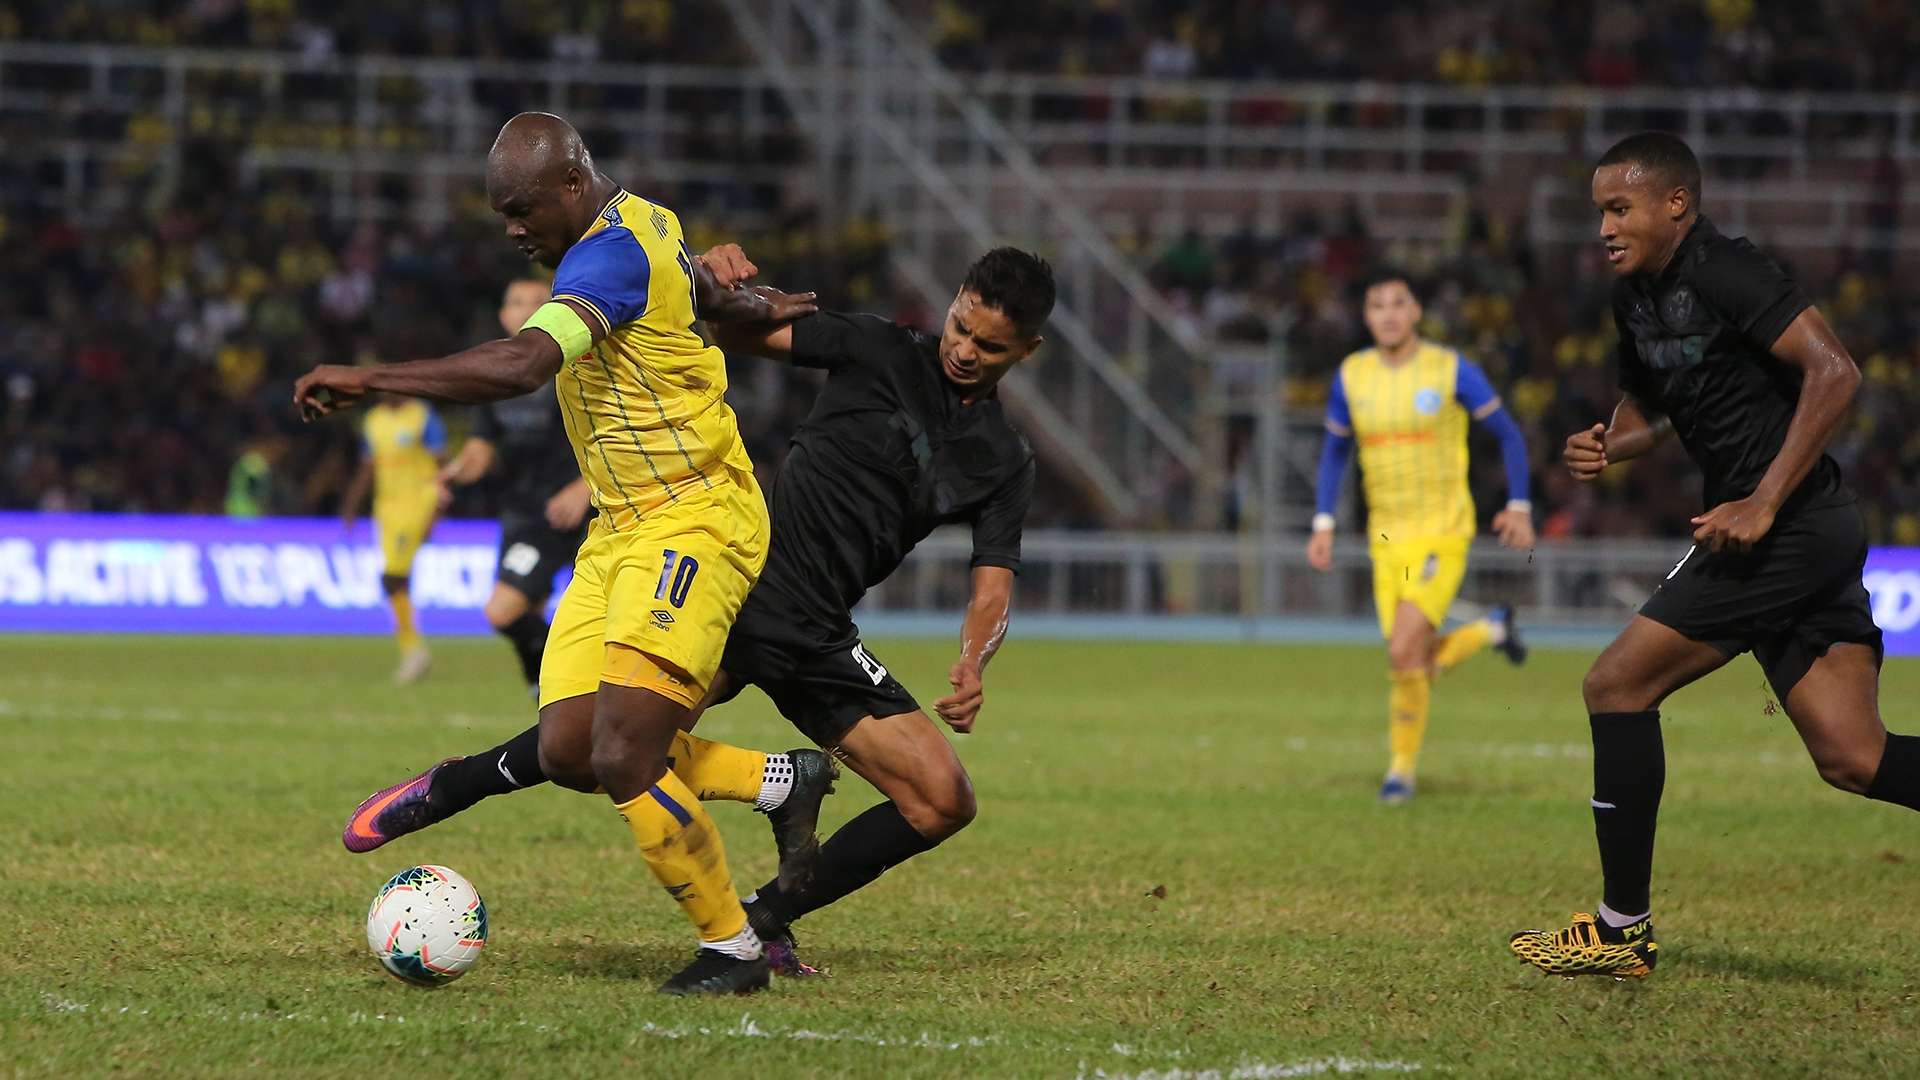 Safuwan Baharudin, Dickson Nwakaeme, Pahang v Selangor, Super League, 29 Feb 2020